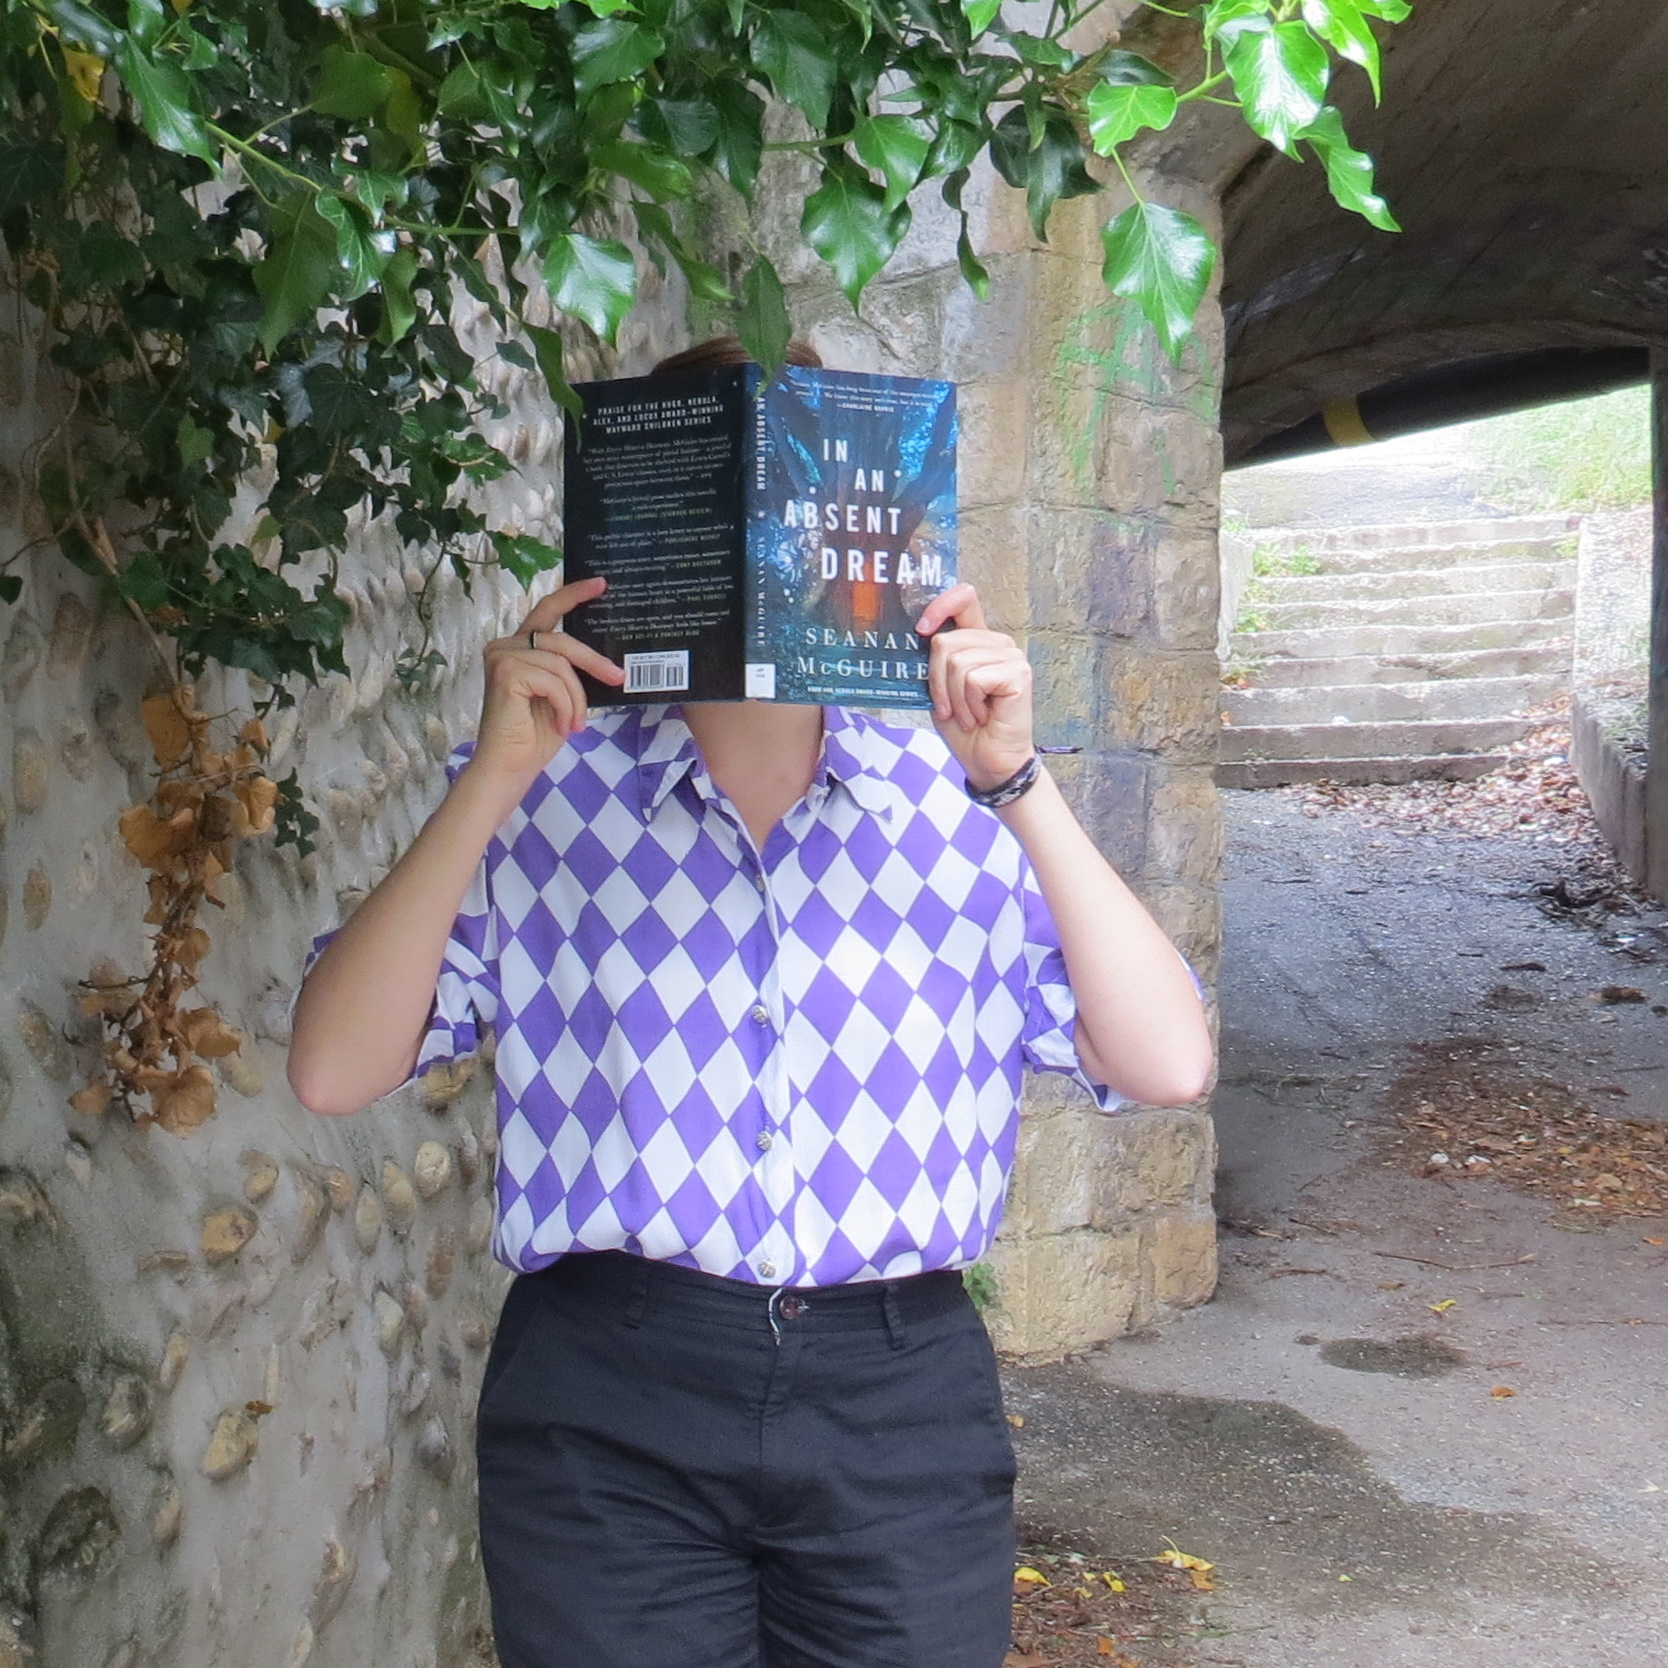 personne en chemise à carreaux violets lisant Wayward Children Tome 4 : In an Absent Dream de Seanan McGuire devant un petit tunnel